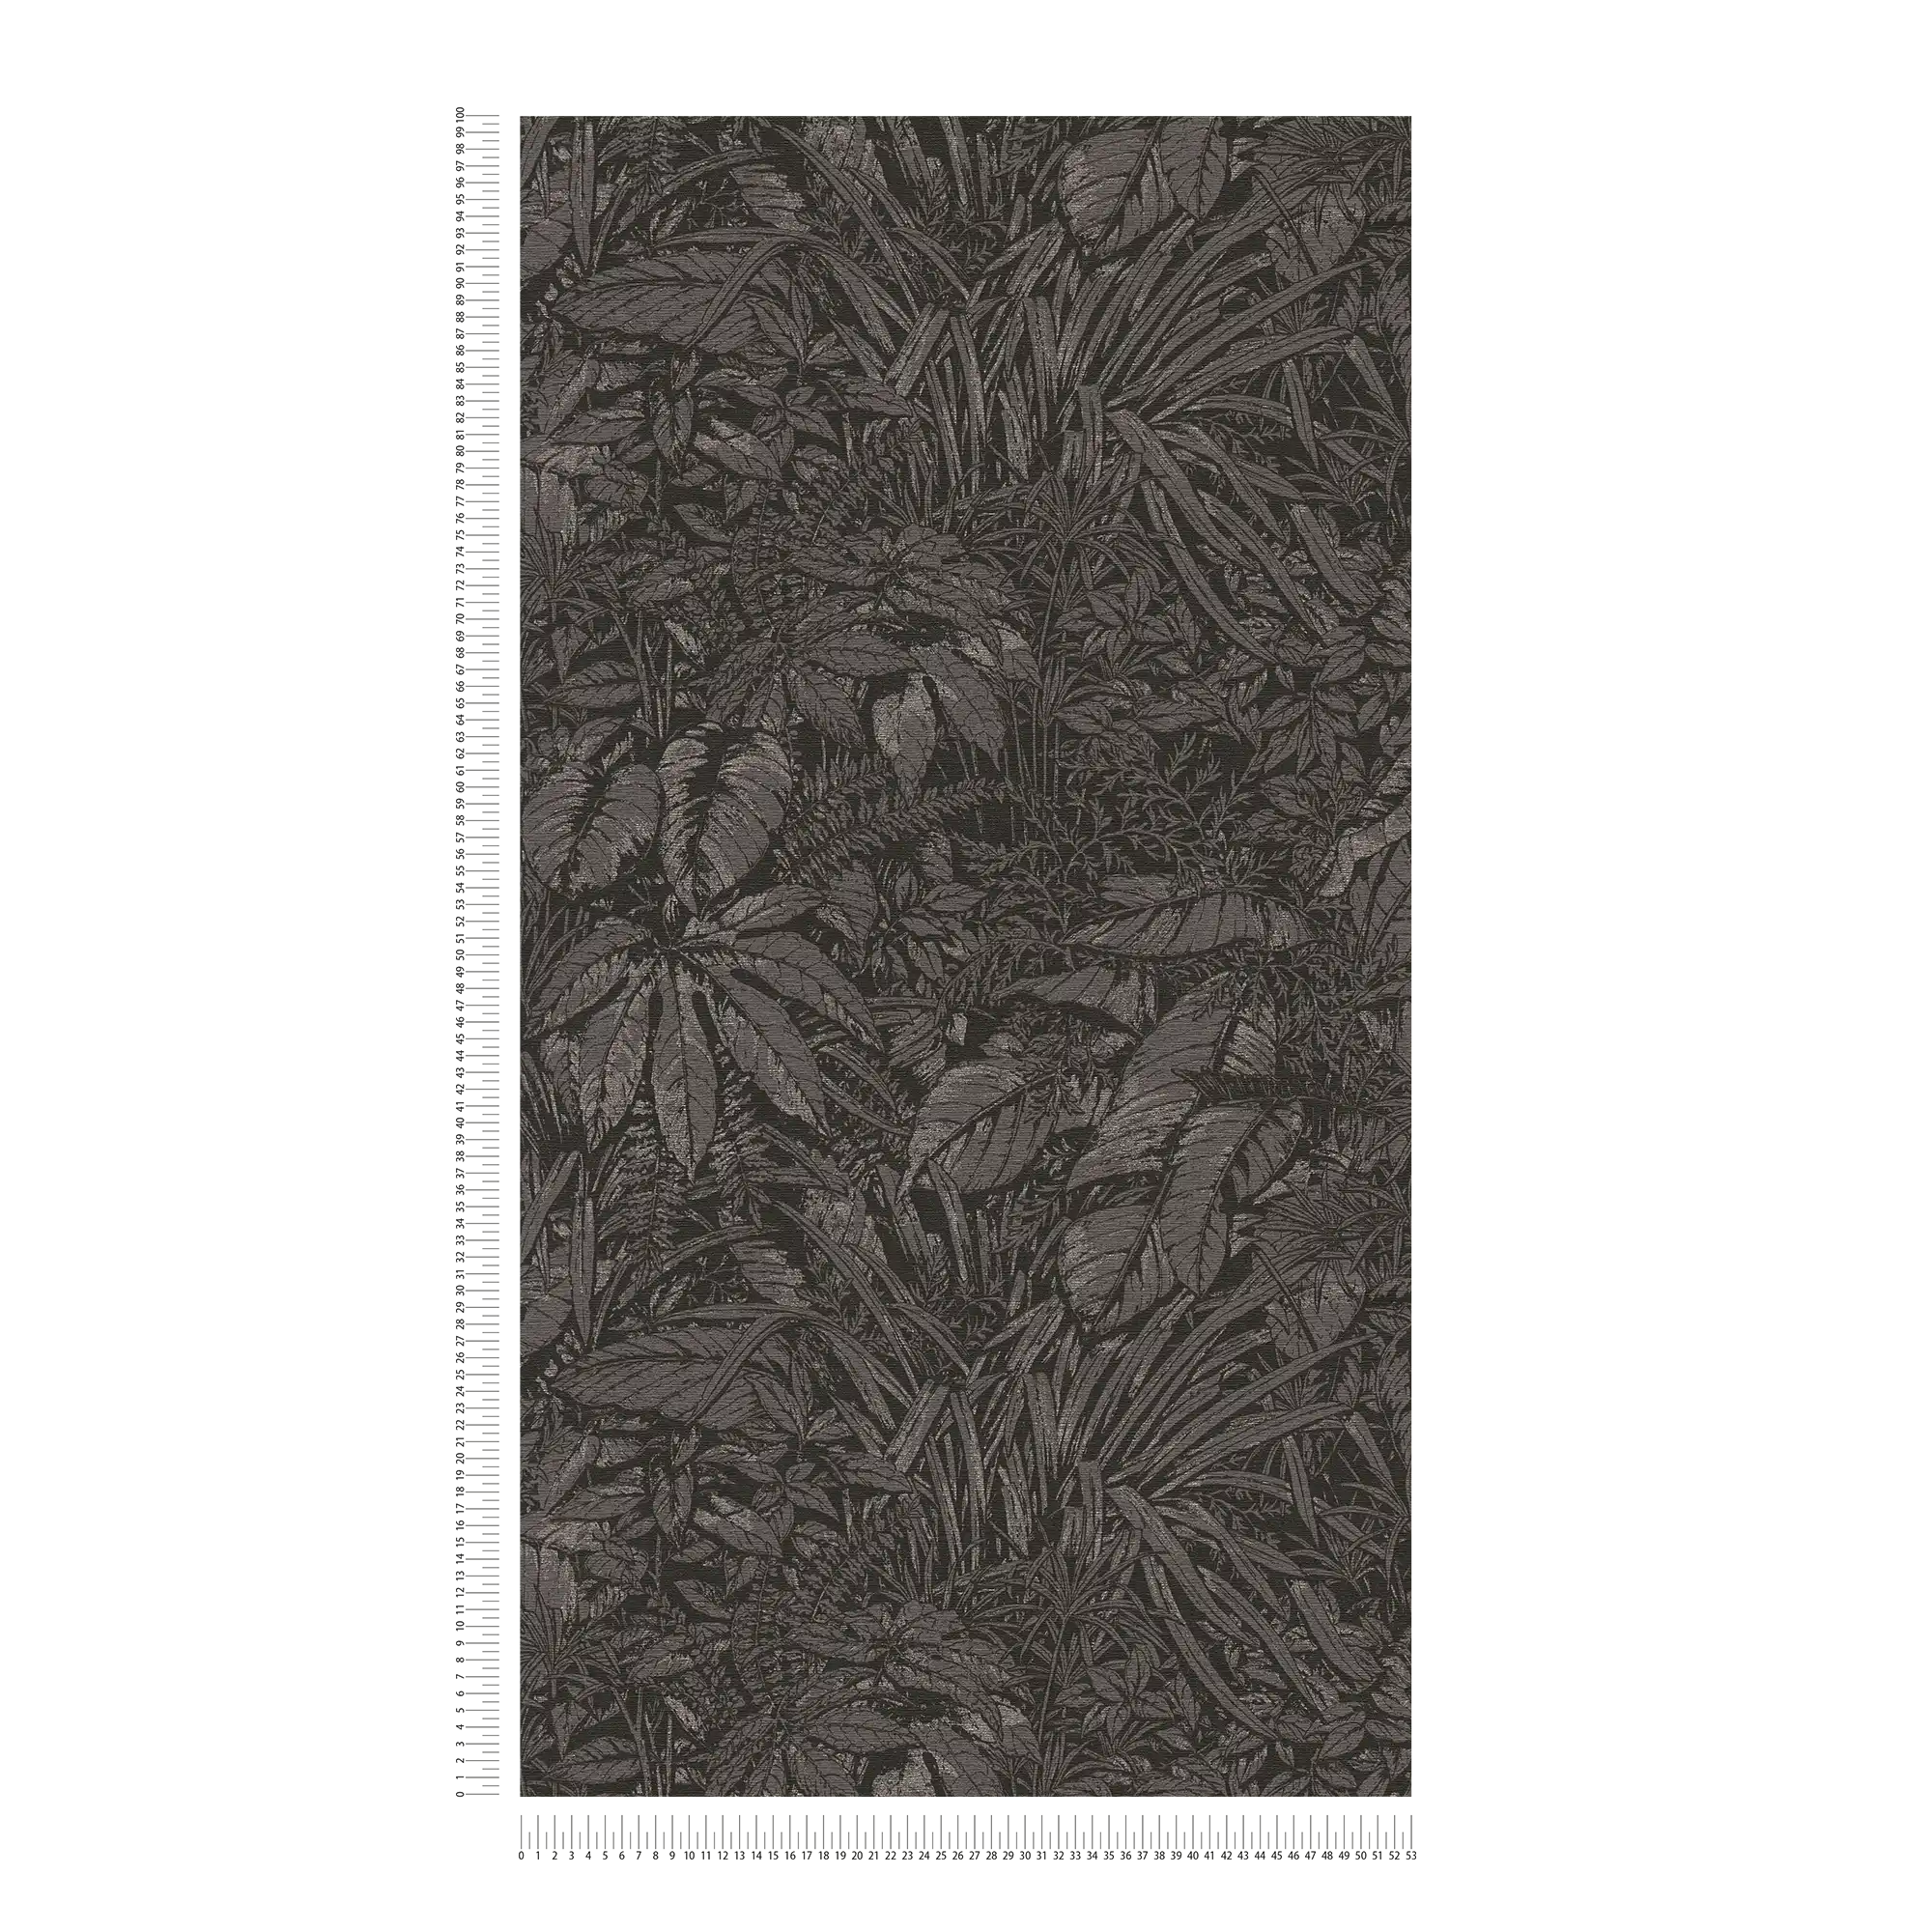             papier peint en papier intissé floral avec motif jungle - noir, gris, argenté
        